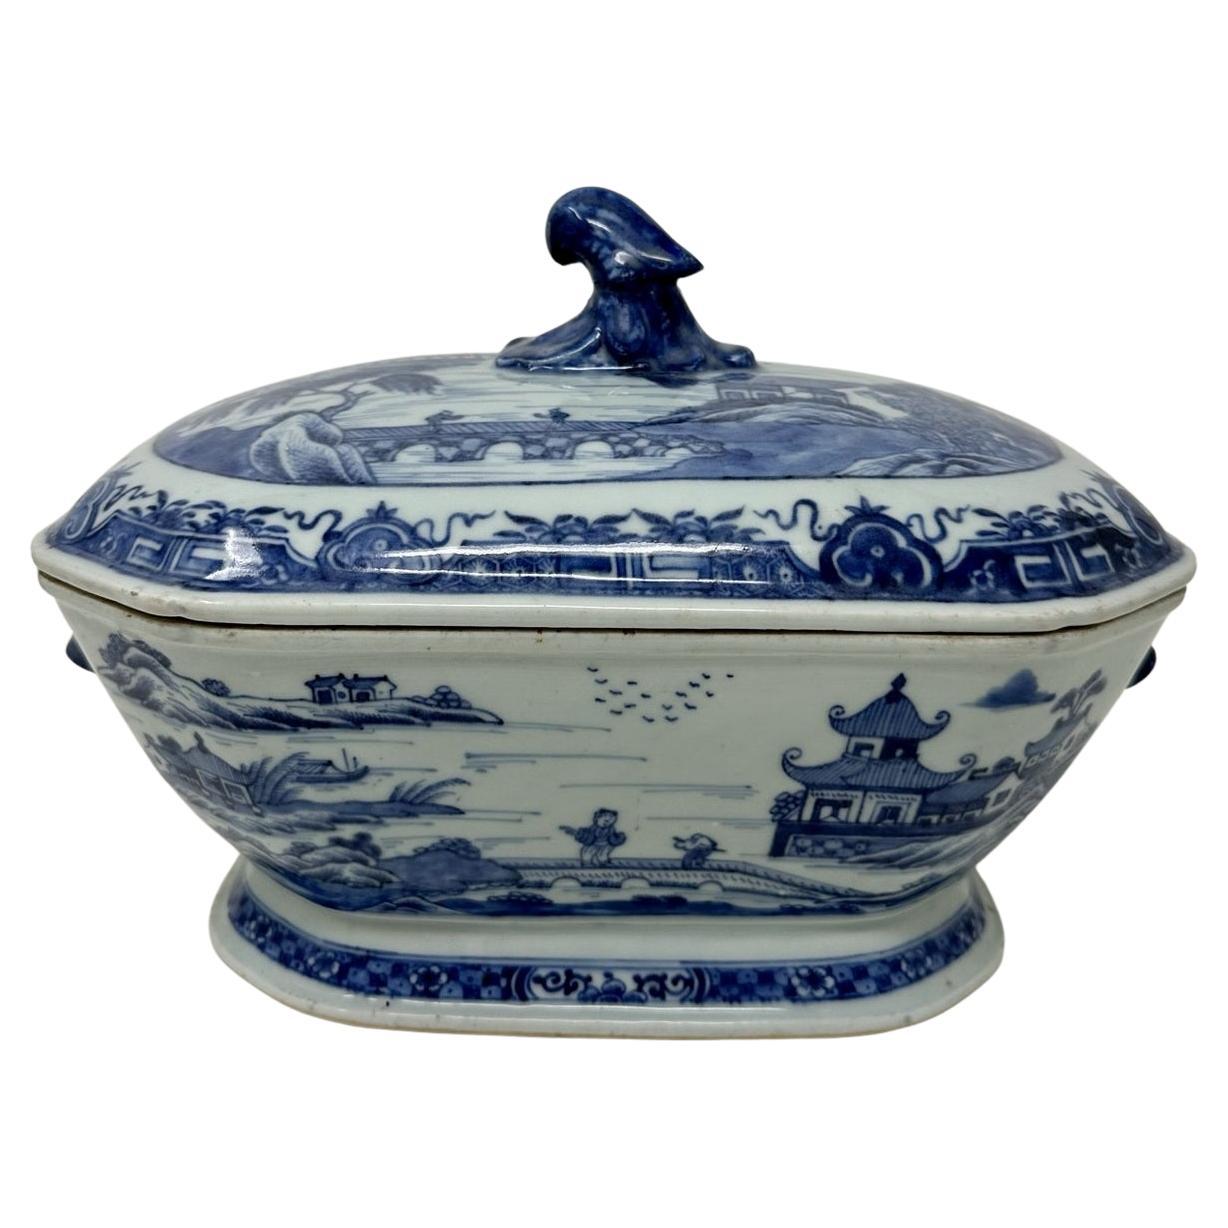 Soupière centrale antique en porcelaine d'exportation chinoise bleue et blanche Chien Lung